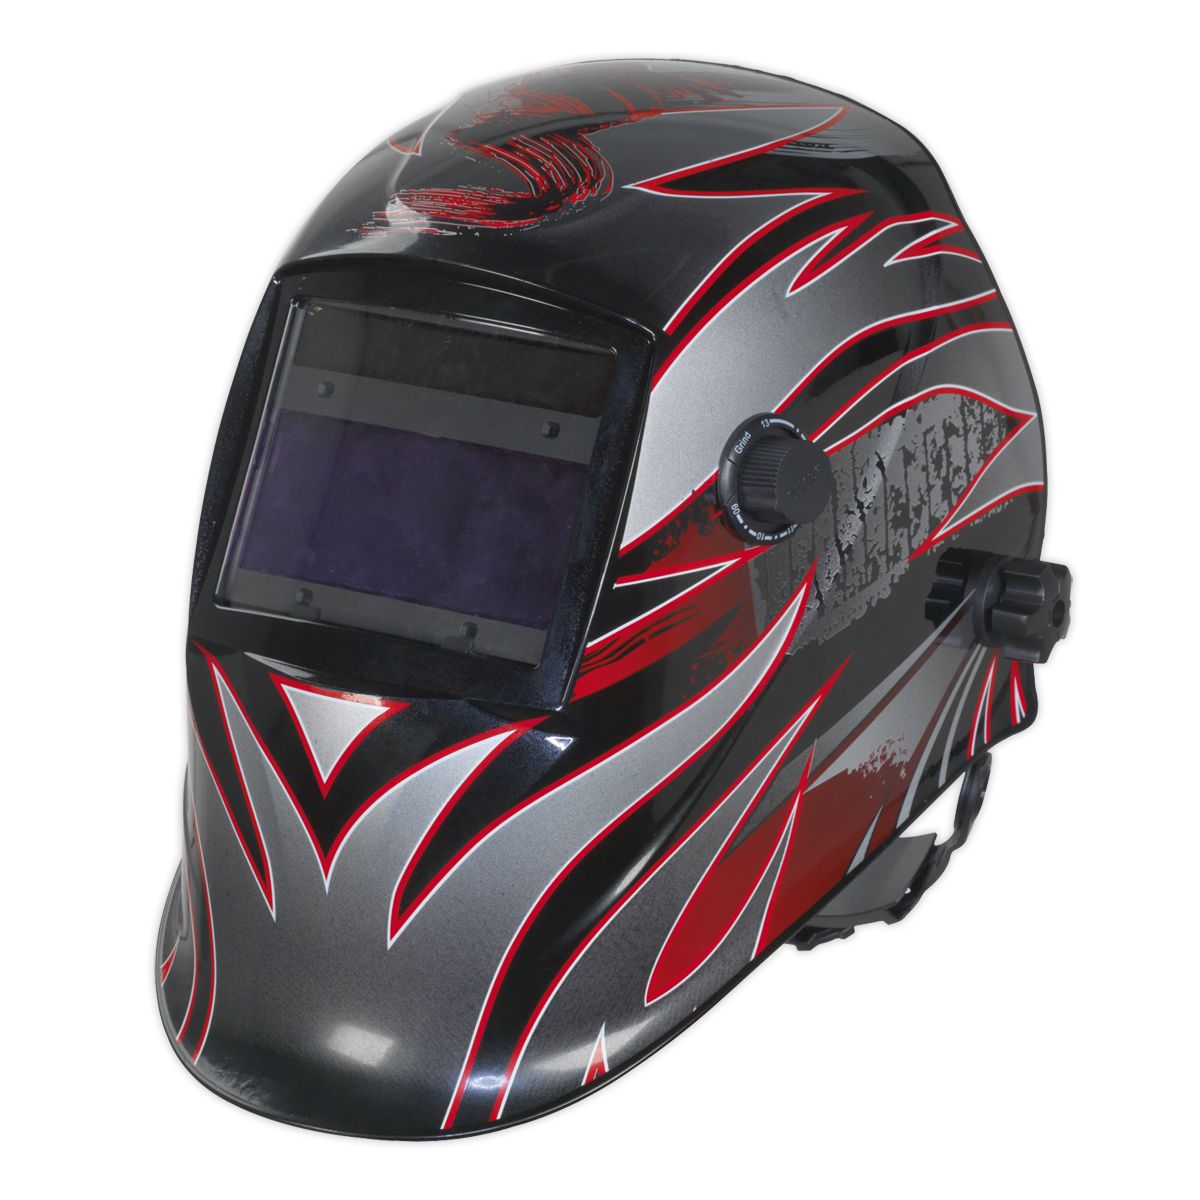 Sealey Auto Darkening Welding Helmet - Shade 9-13 PWH600